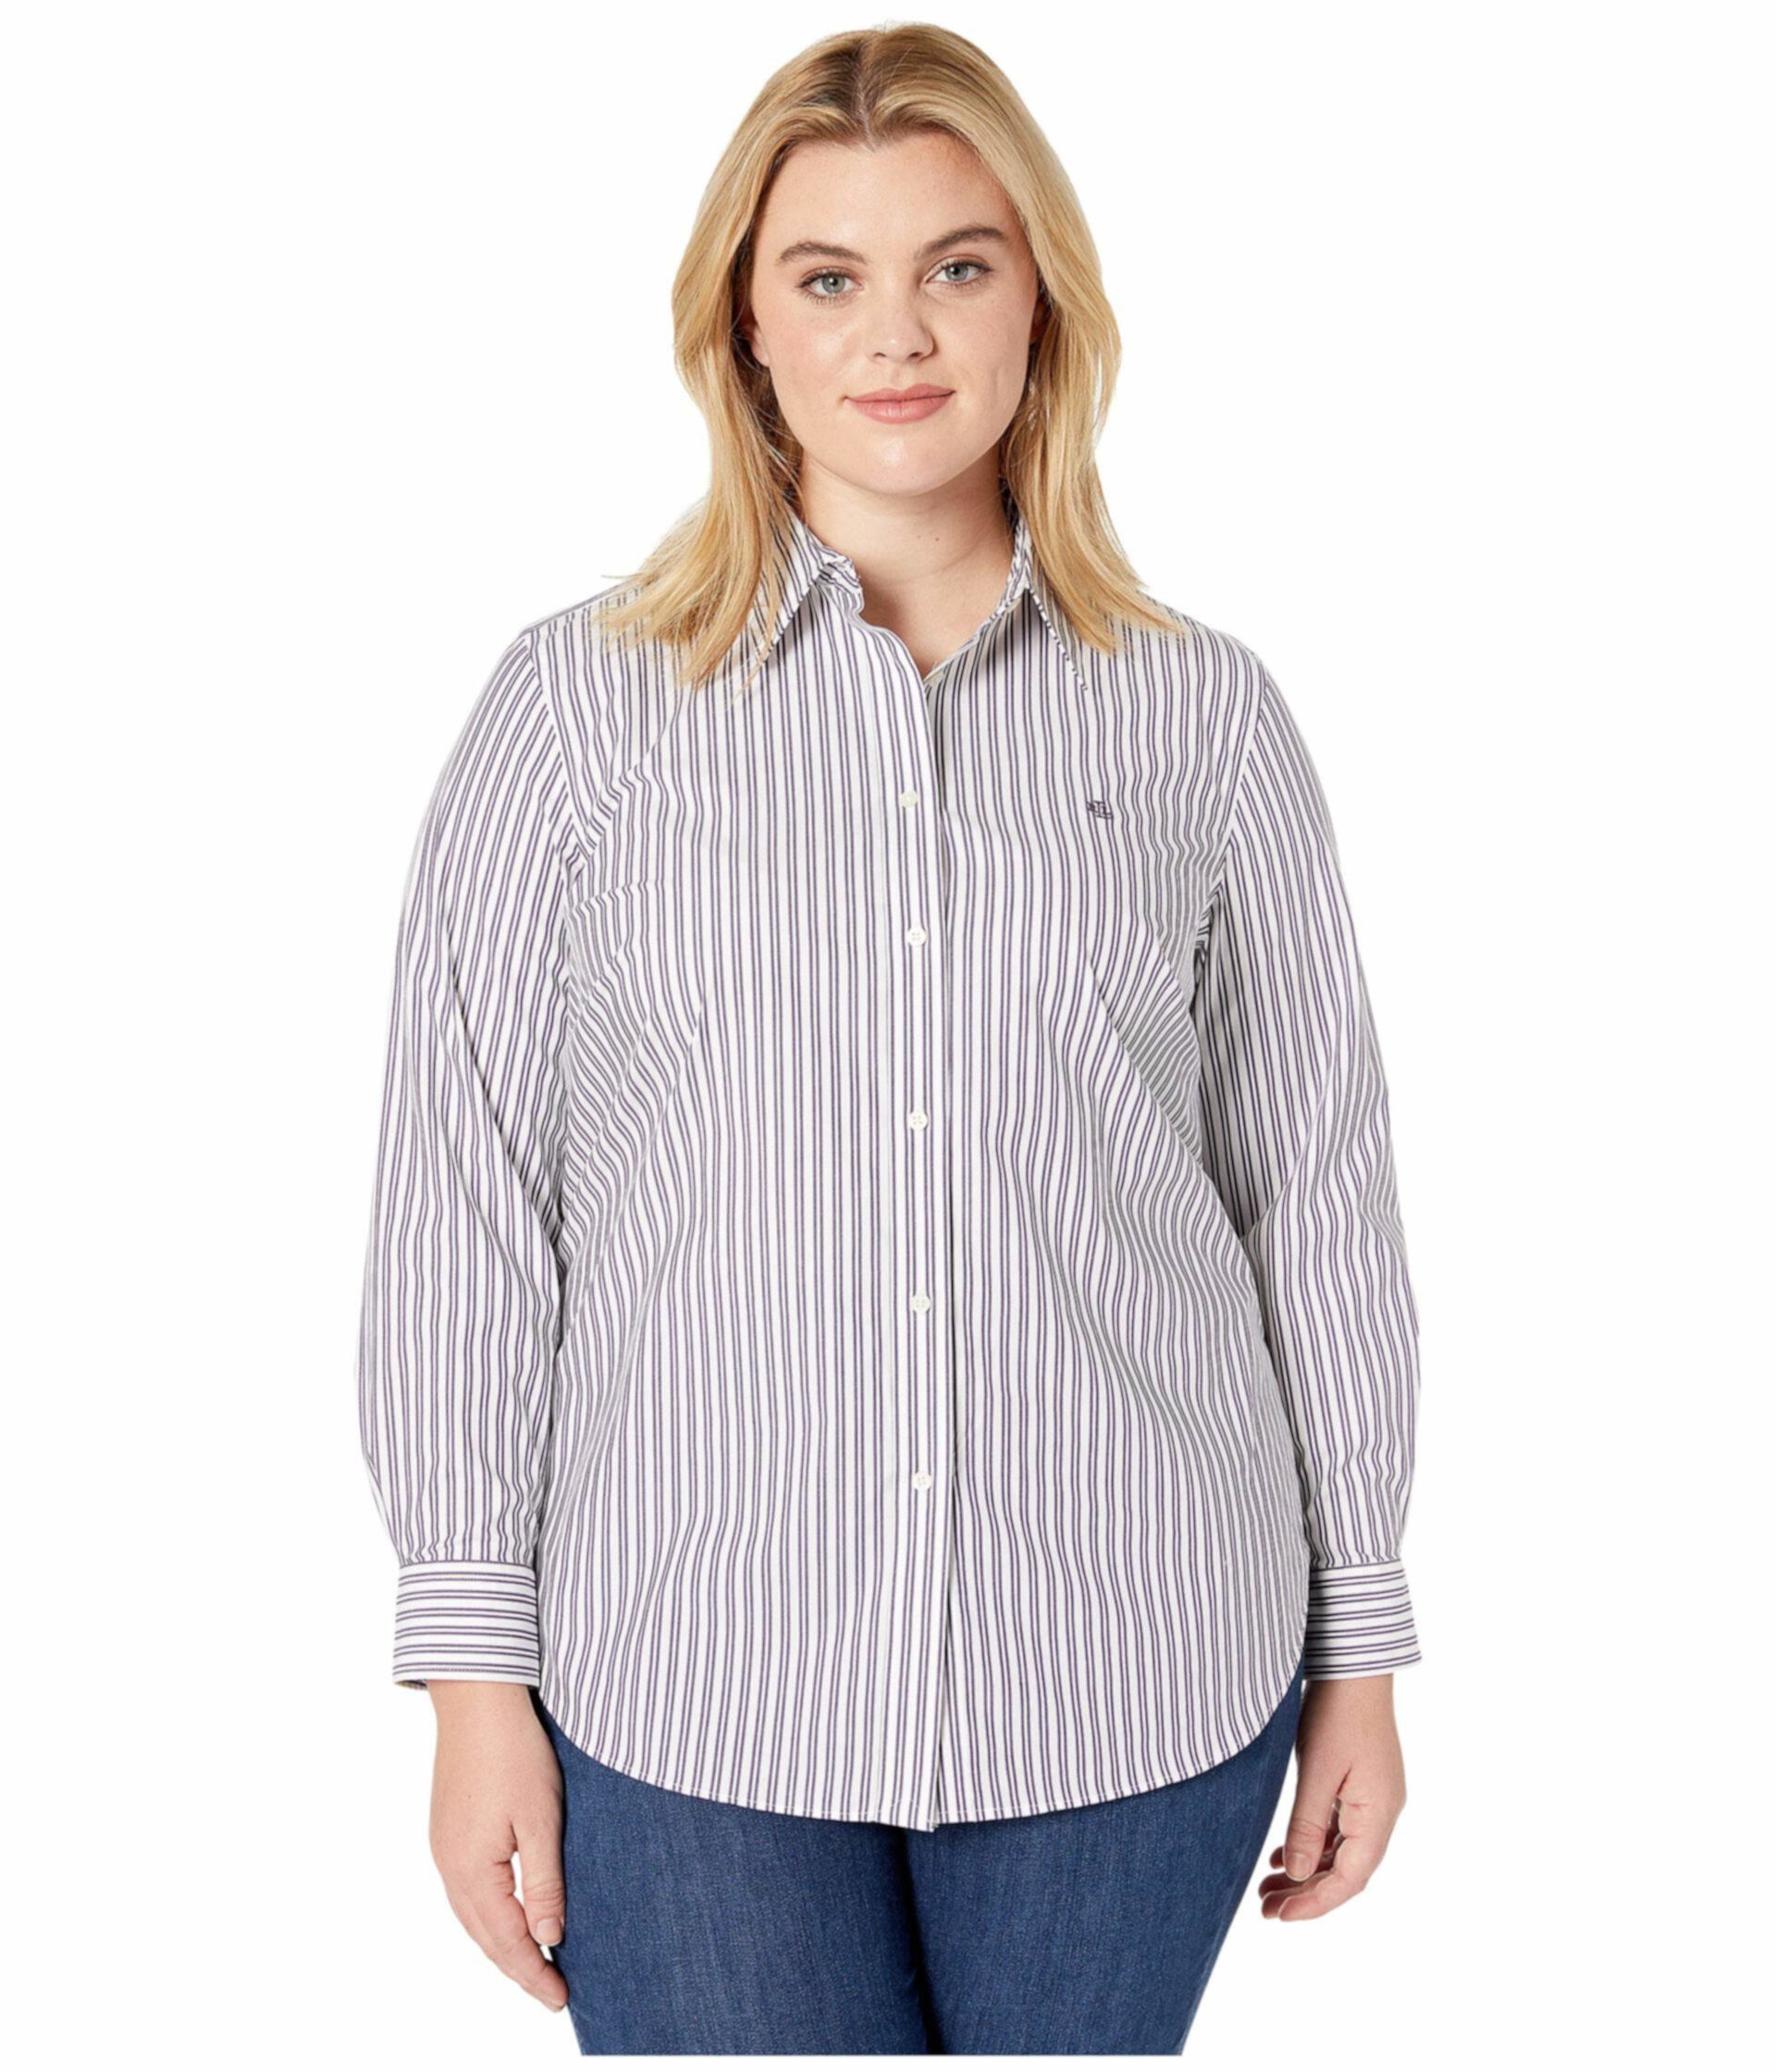 Безразмерная полосатая рубашка большого размера Ralph Lauren